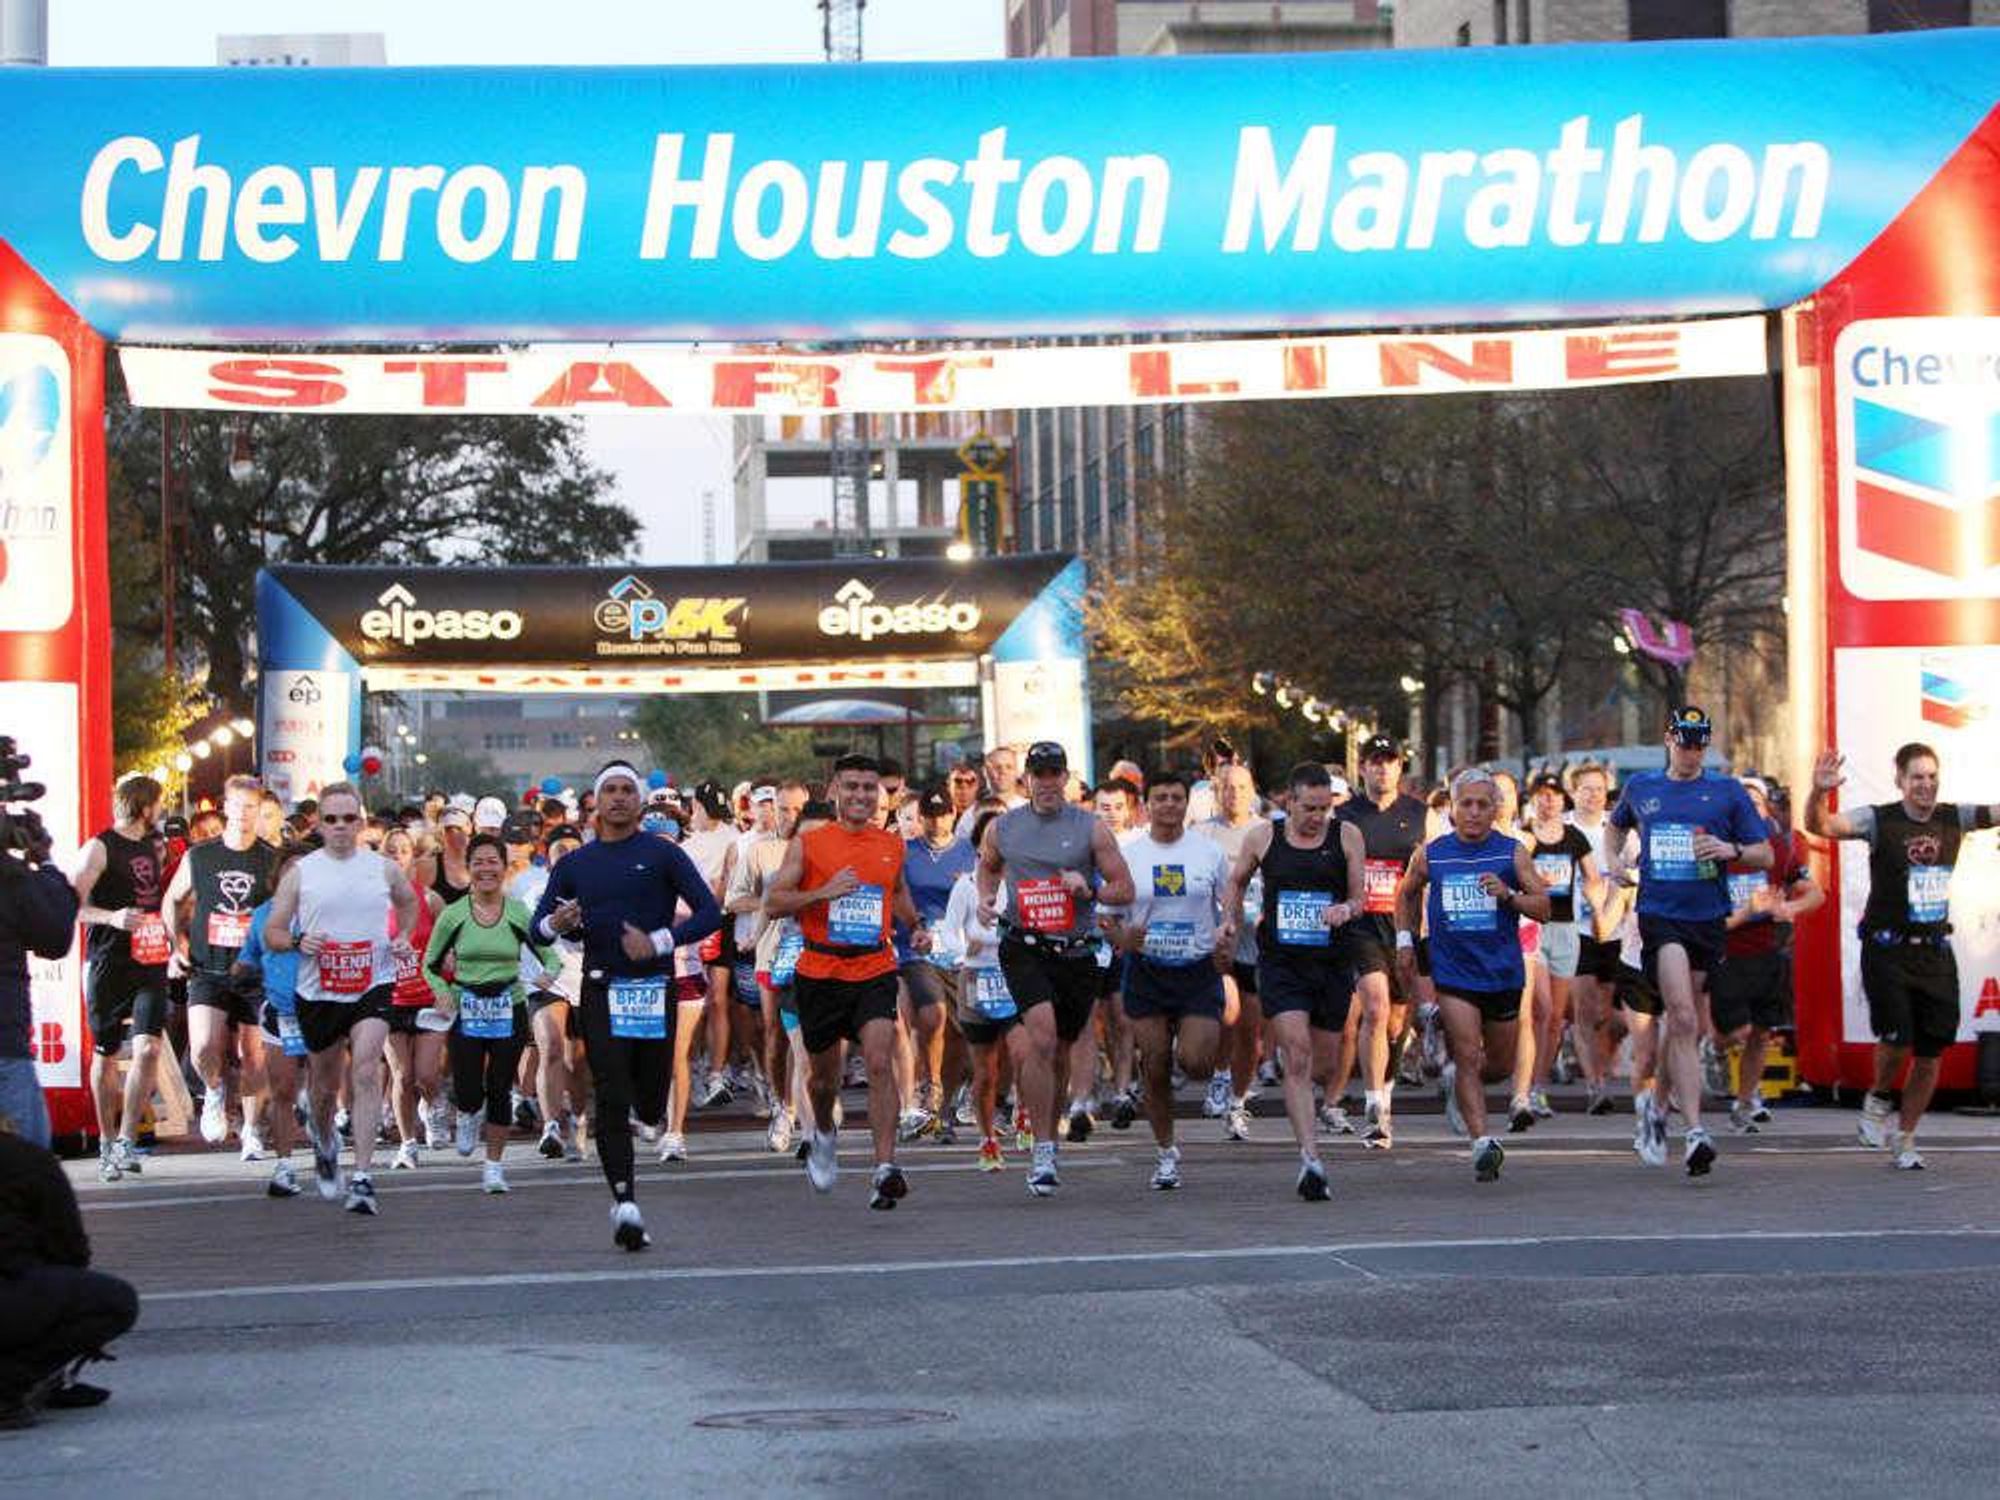 News_Steve Popp_Houston Marathon 2010_history_Chevron Houston Marathon 2010_Start Line